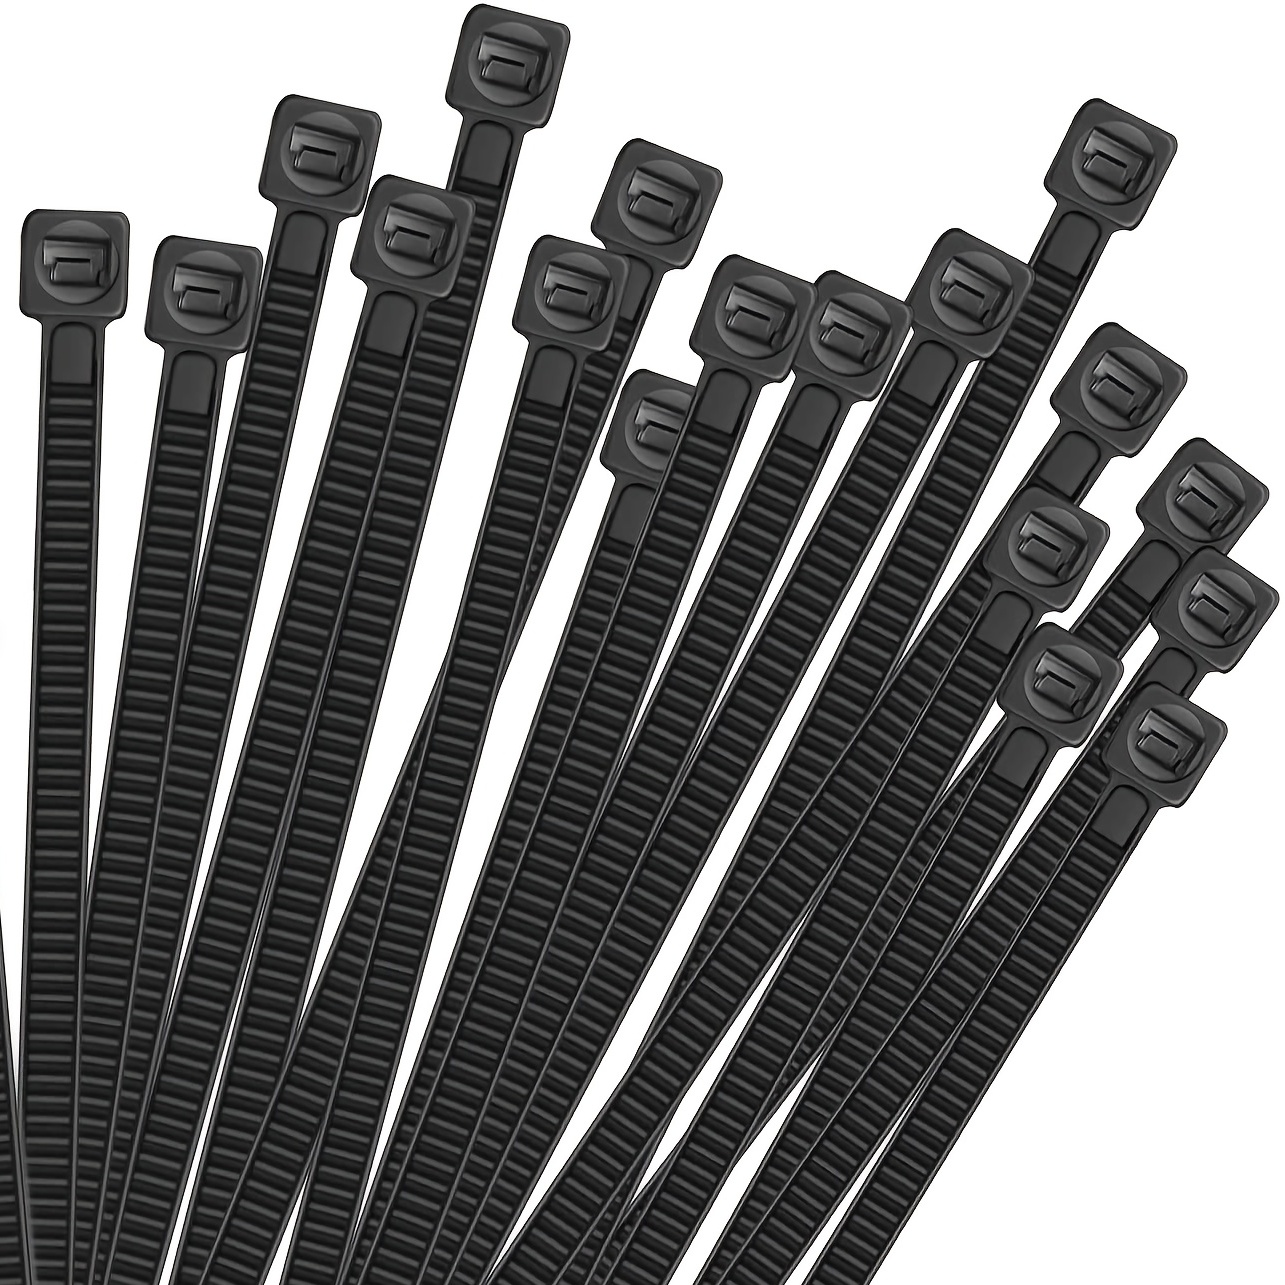 Buy 150pcs Self-Locking Nylon Cable Ties - 4in, 6in, 8in, 10in Black Zip Ties